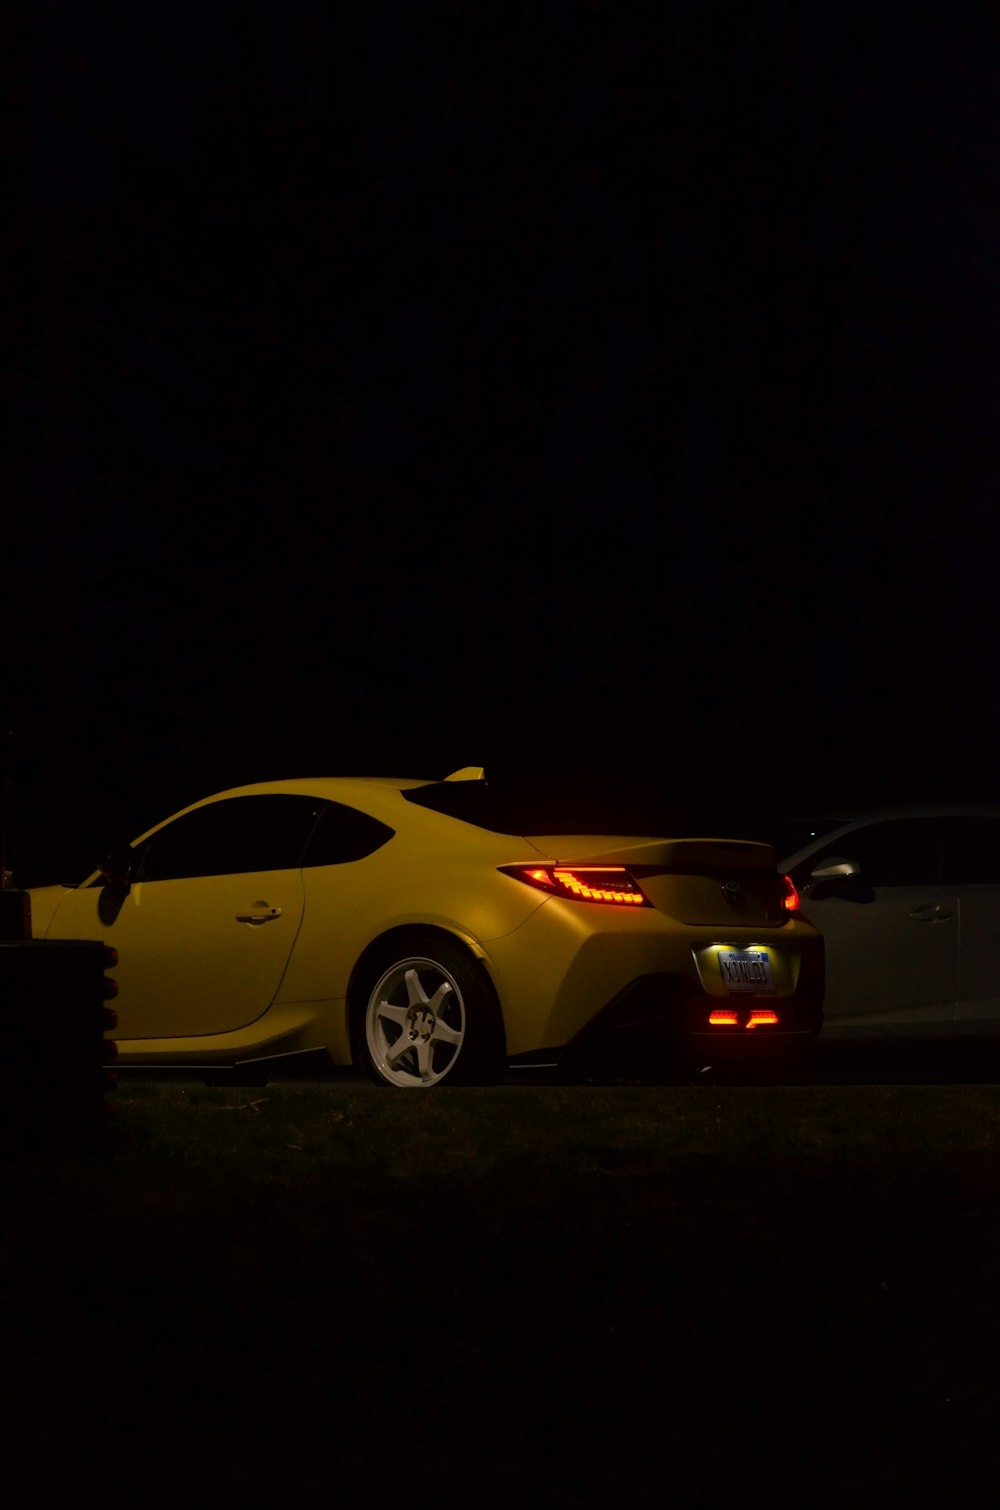 Un coche deportivo amarillo aparcado en la oscuridad